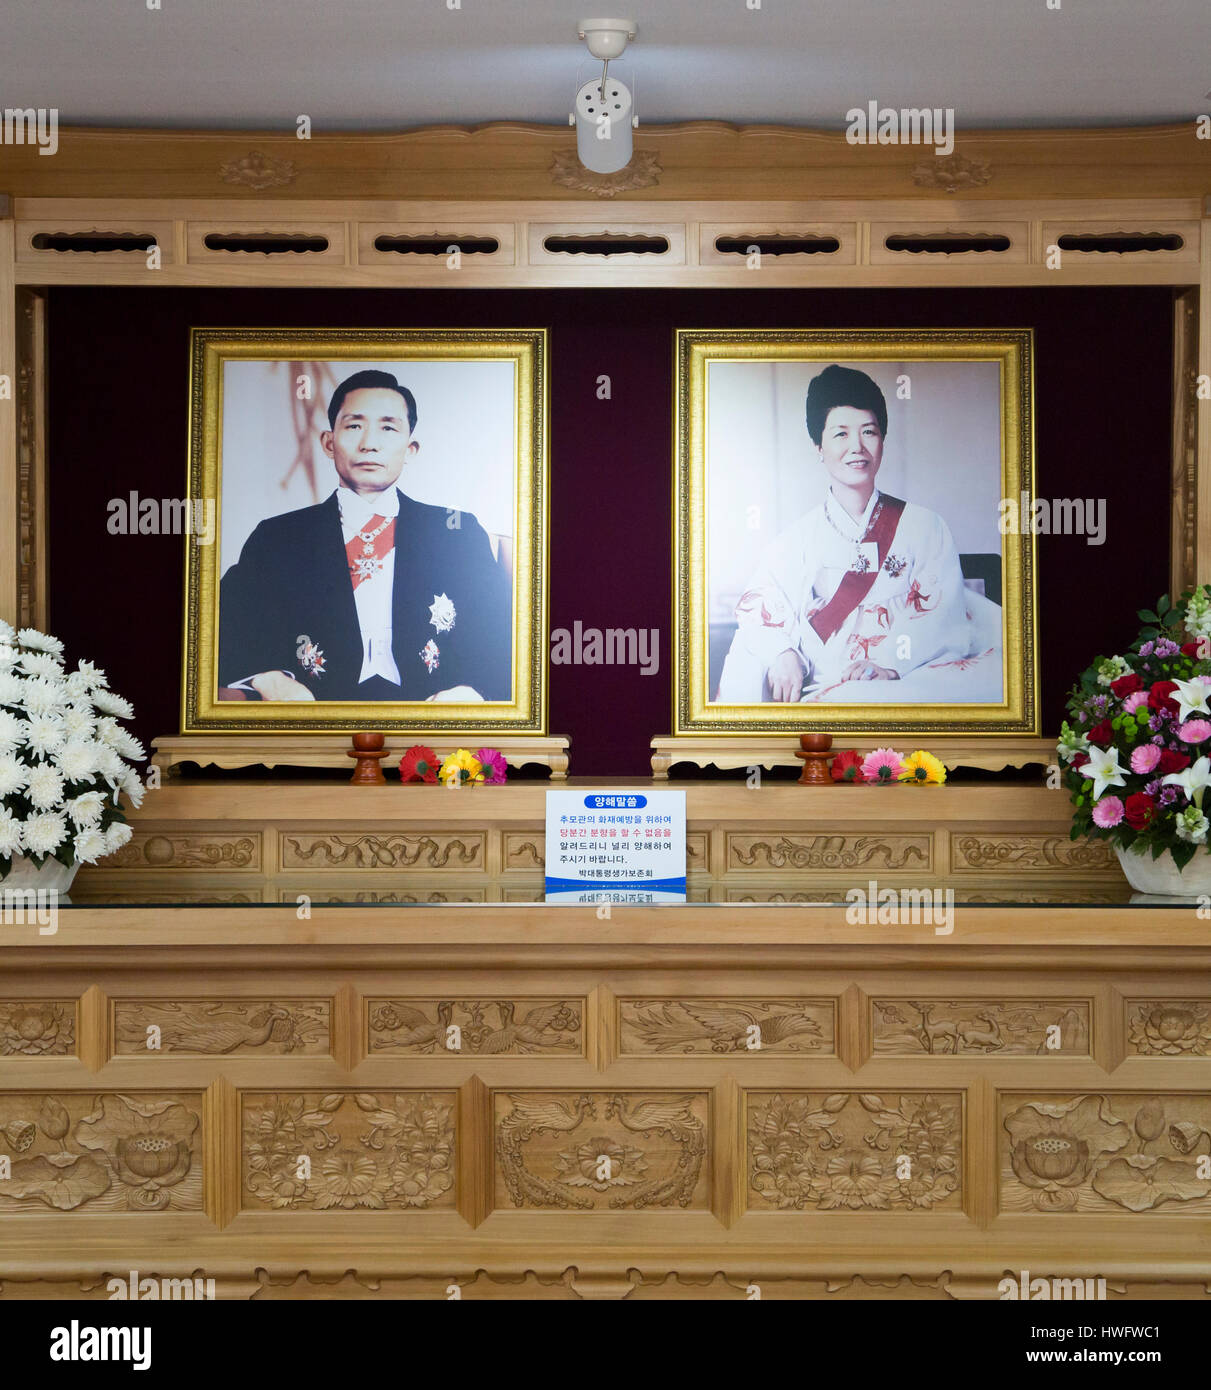 Luogo di nascita del Parco Chung-Hee, Mar 18, 2017 : Ritratti di fine il Presidente sud coreano Park Chung-hee e sua moglie Yuk Young-soo sono visualizzati in un santuario memoriale presso la sua casa natale a Gumi, circa 201 km (125 miglia) di sud-est di Seoul, Corea del Sud. Park Chung-hee è l'ex dittatore militare che ha preso il potere con un colpo di stato militare in 1961 ed ha escluso la Corea del Sud fino al suo assassinio nel 1979. Alla fine il Presidente sud coreano è stato tenente nell'esercito giapponese durante il Giappone della dominazione coloniale in Corea ed è stata ampiamente criticata quando egli imprigionato molti attivisti a favore della democrazia durante il suo 18-anno-seiz Foto Stock